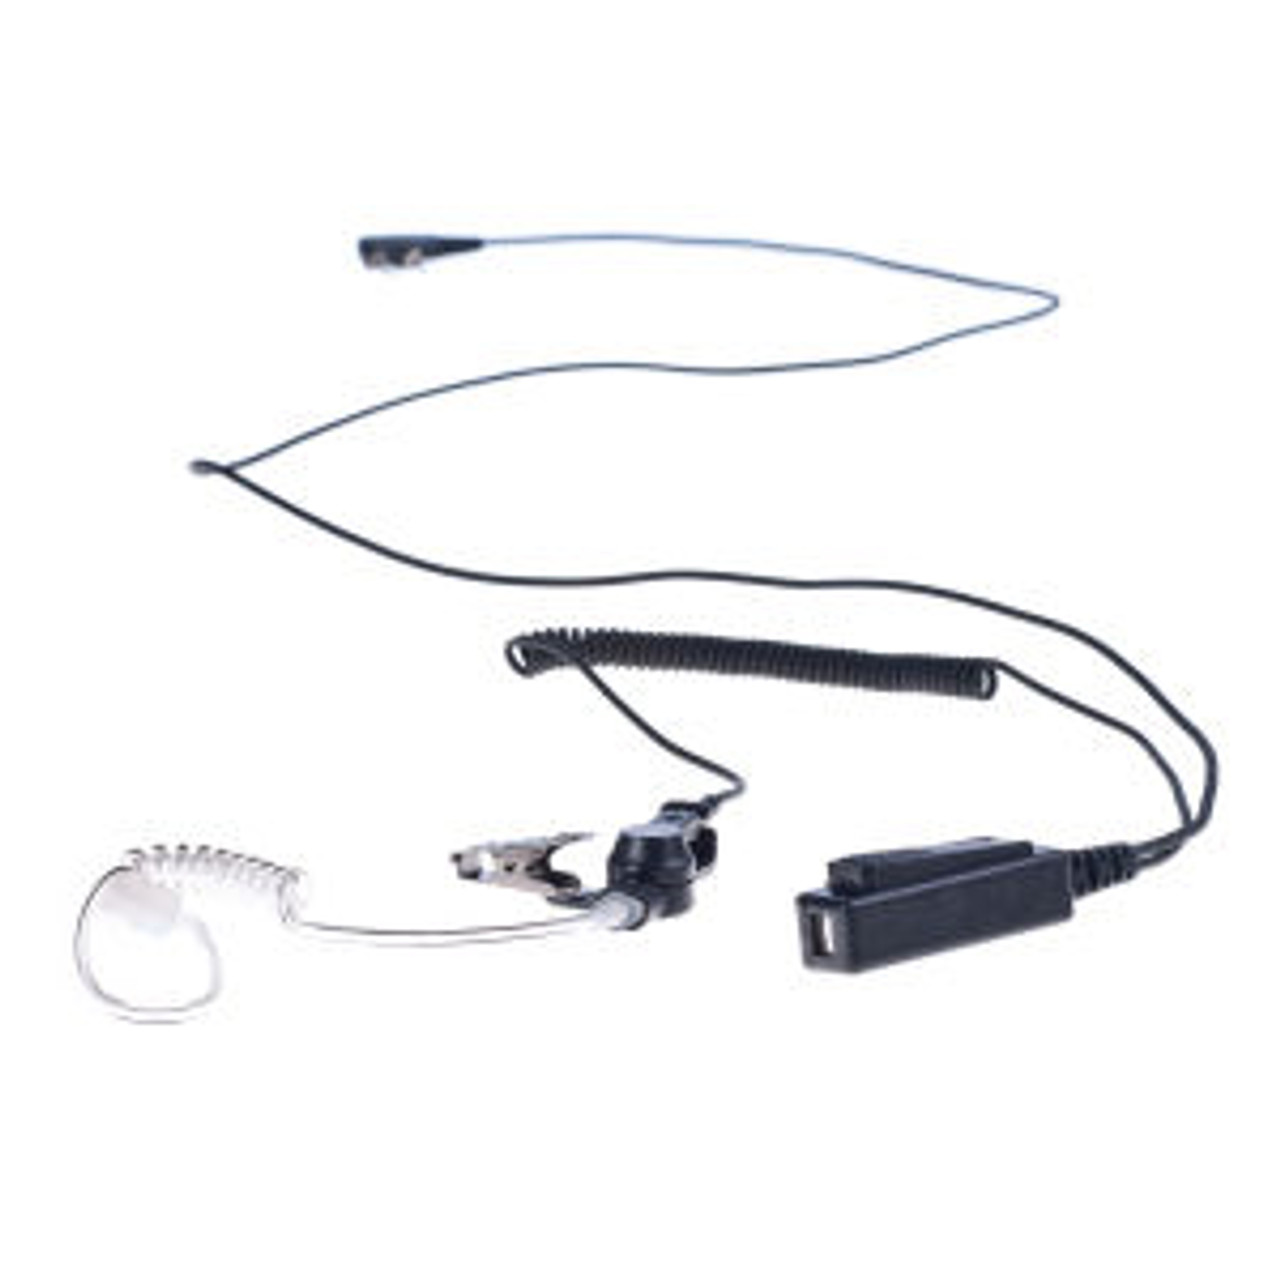 Relm RP6500 1-Wire Surveillance Kit